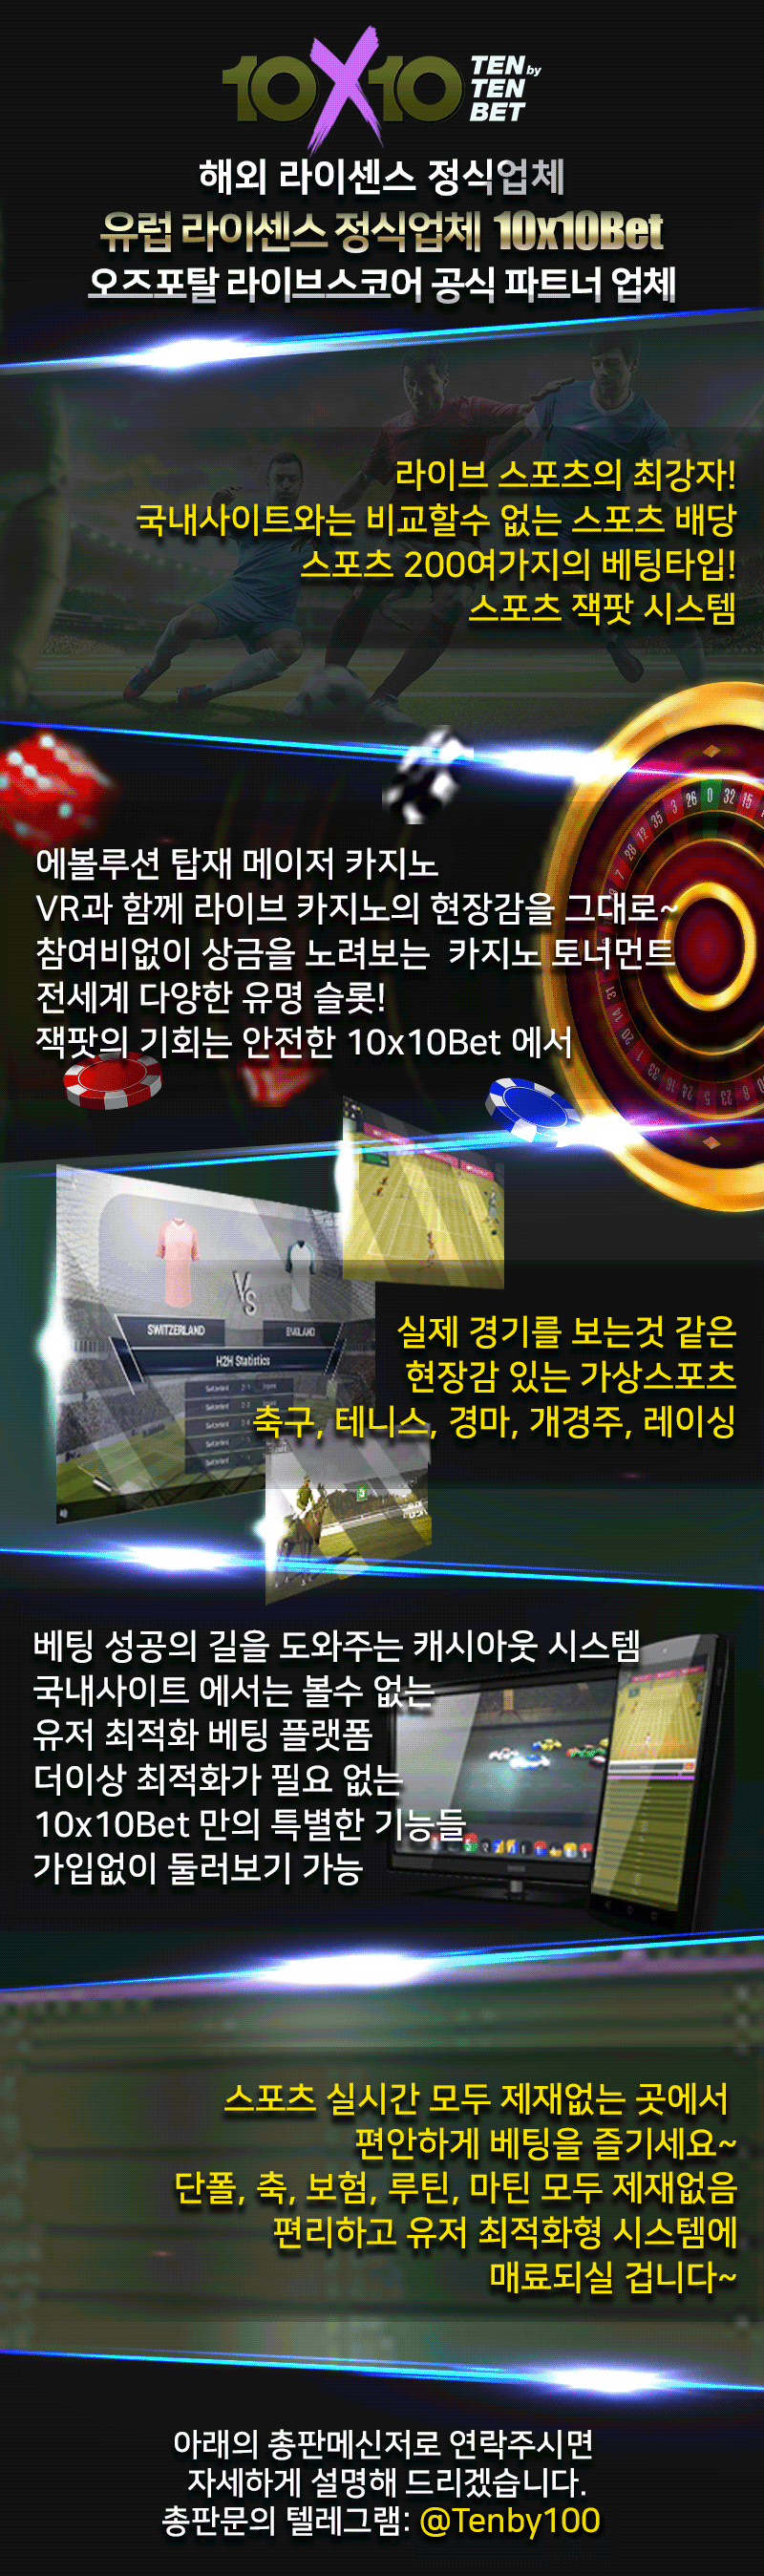 카지노사이트-텐텐벳 게임정보-카지노 사이트 탑